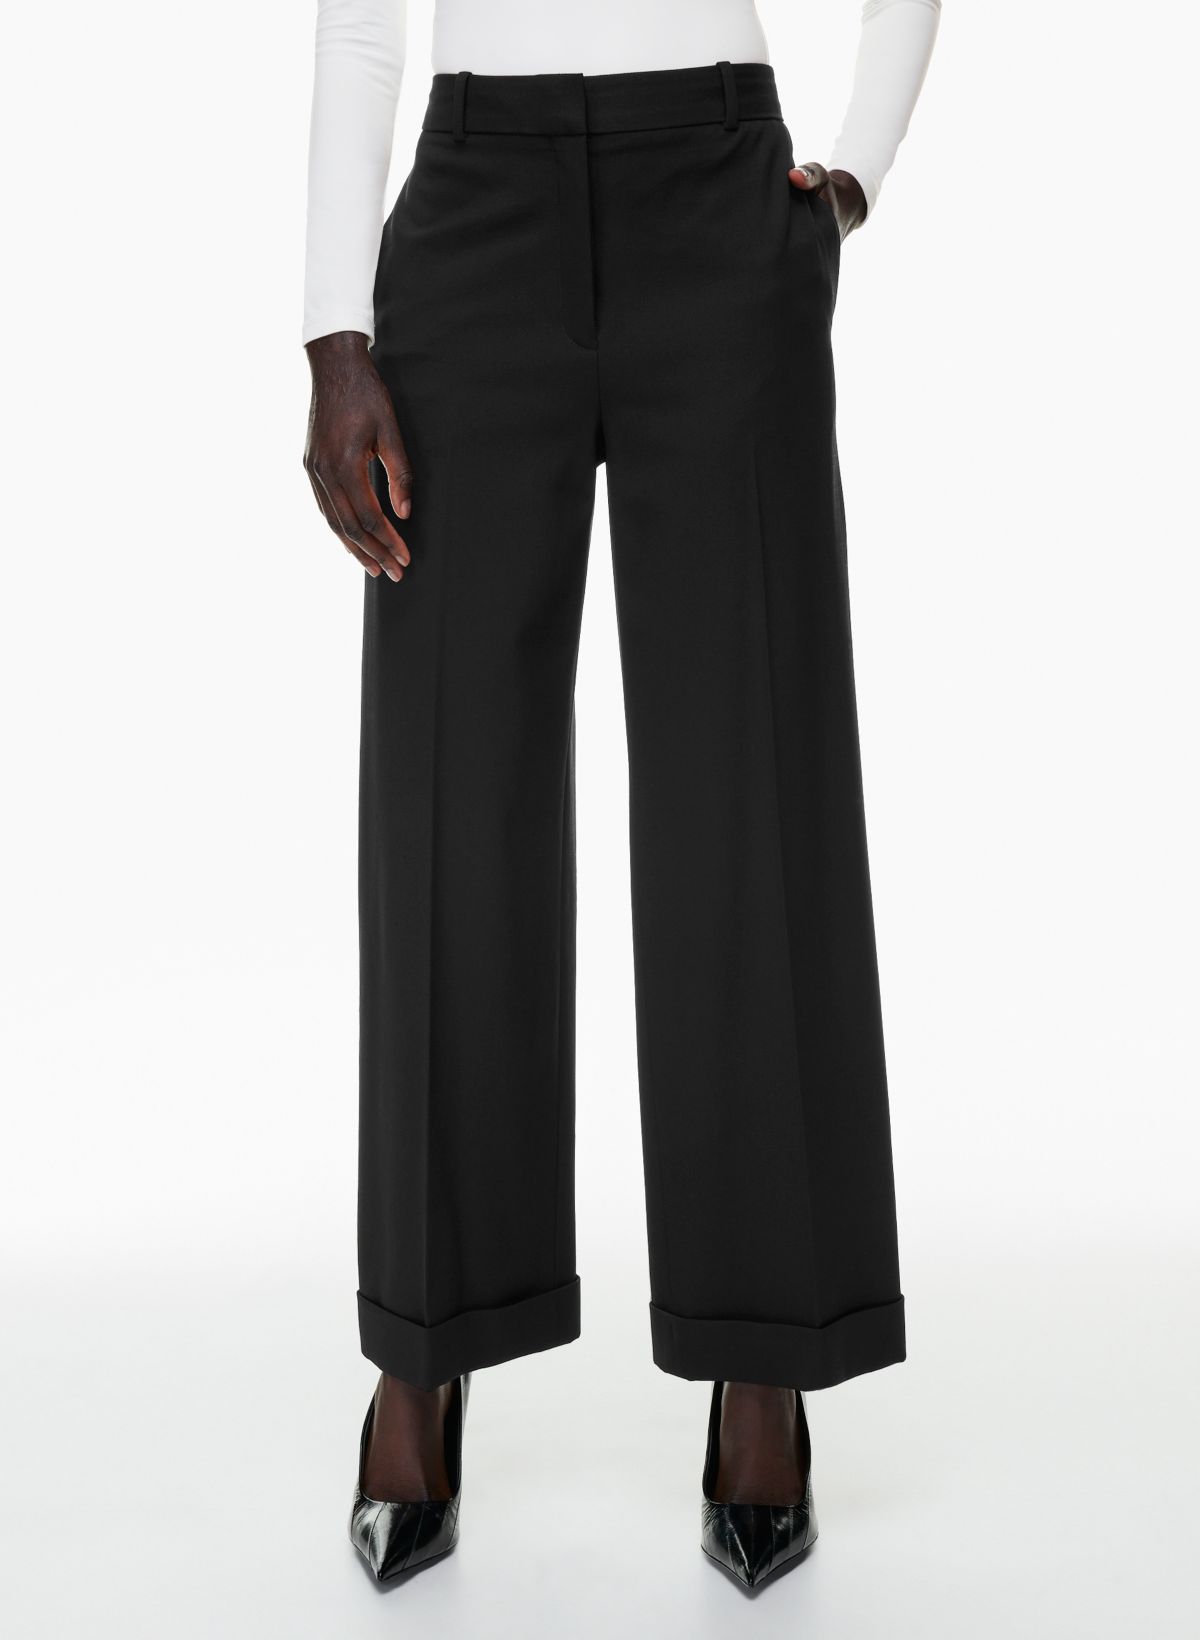 Women’s Size 14 100% Wool Black Dress Pants